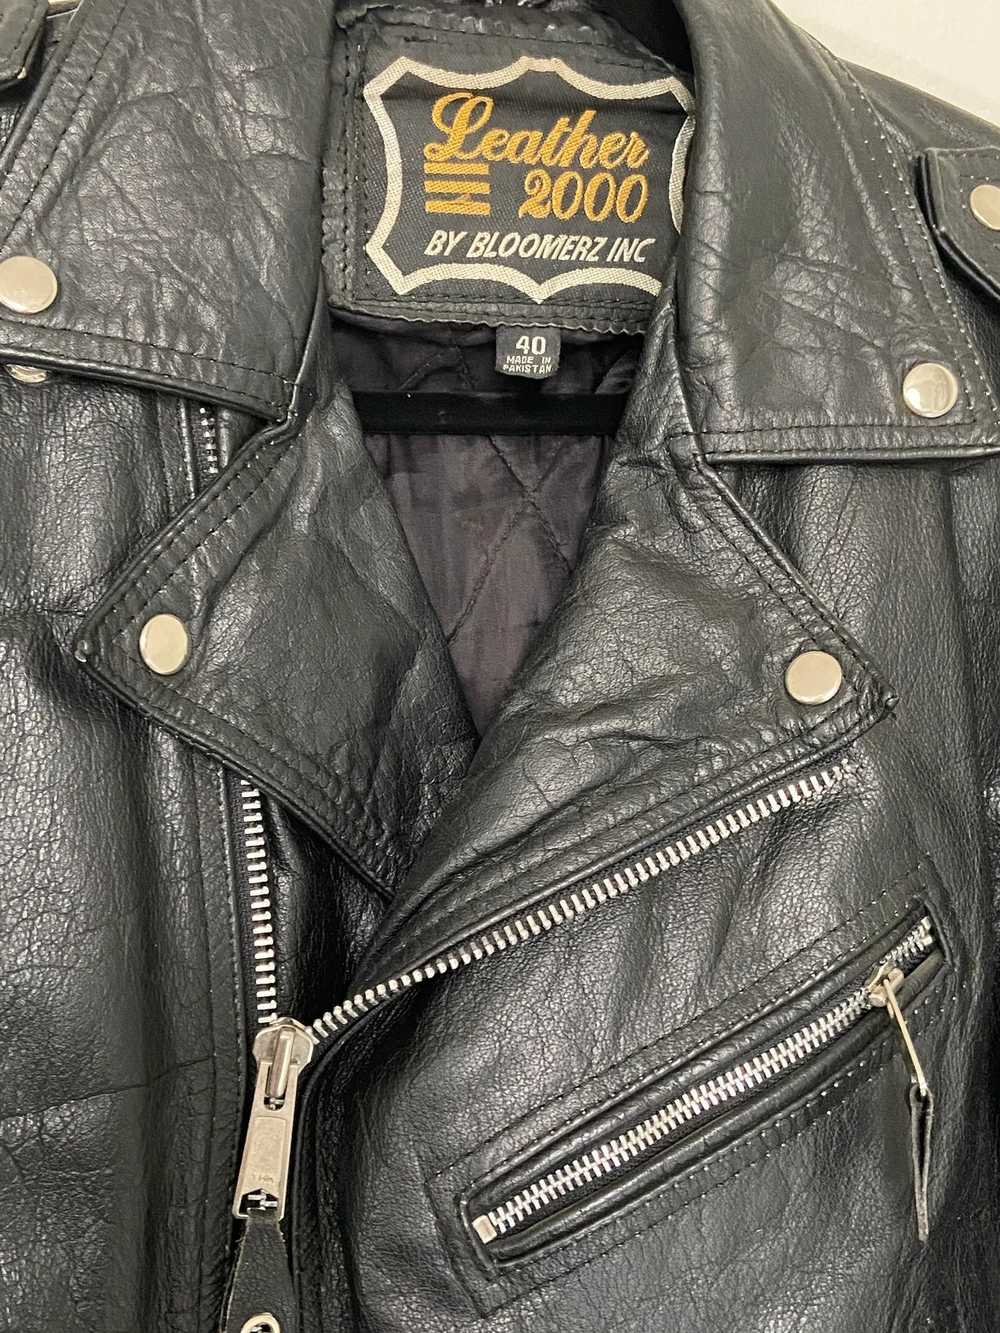 Leather Jacket × Rock Band × Vintage Vintage Leat… - image 3